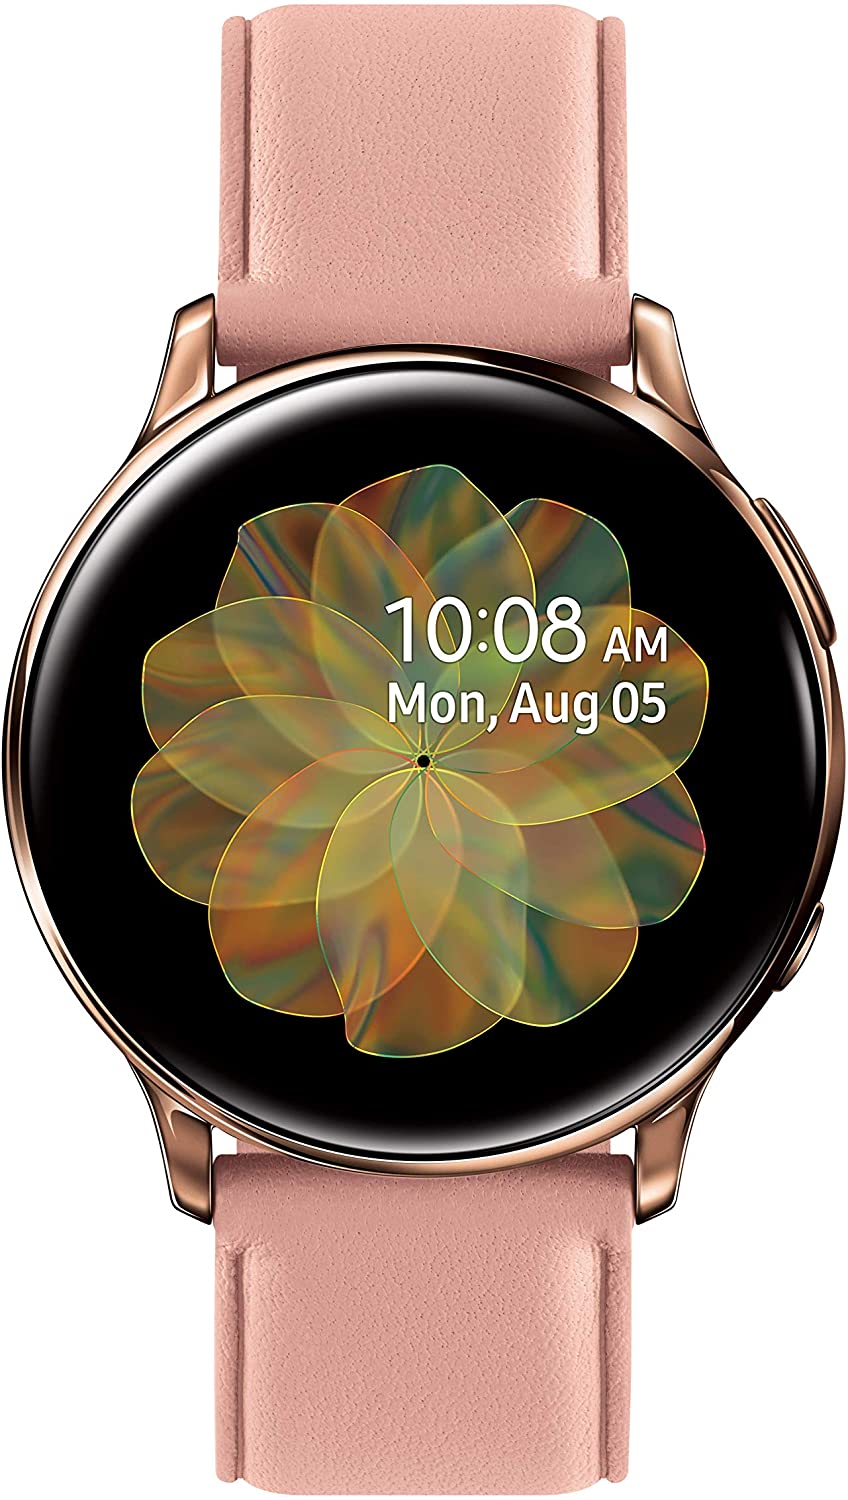 Samsung - SM-R830NZSAXAR Galaxy Watch Active2 Smartwatch 40mm Stainless Steel LTE (Unlocked) - Gold